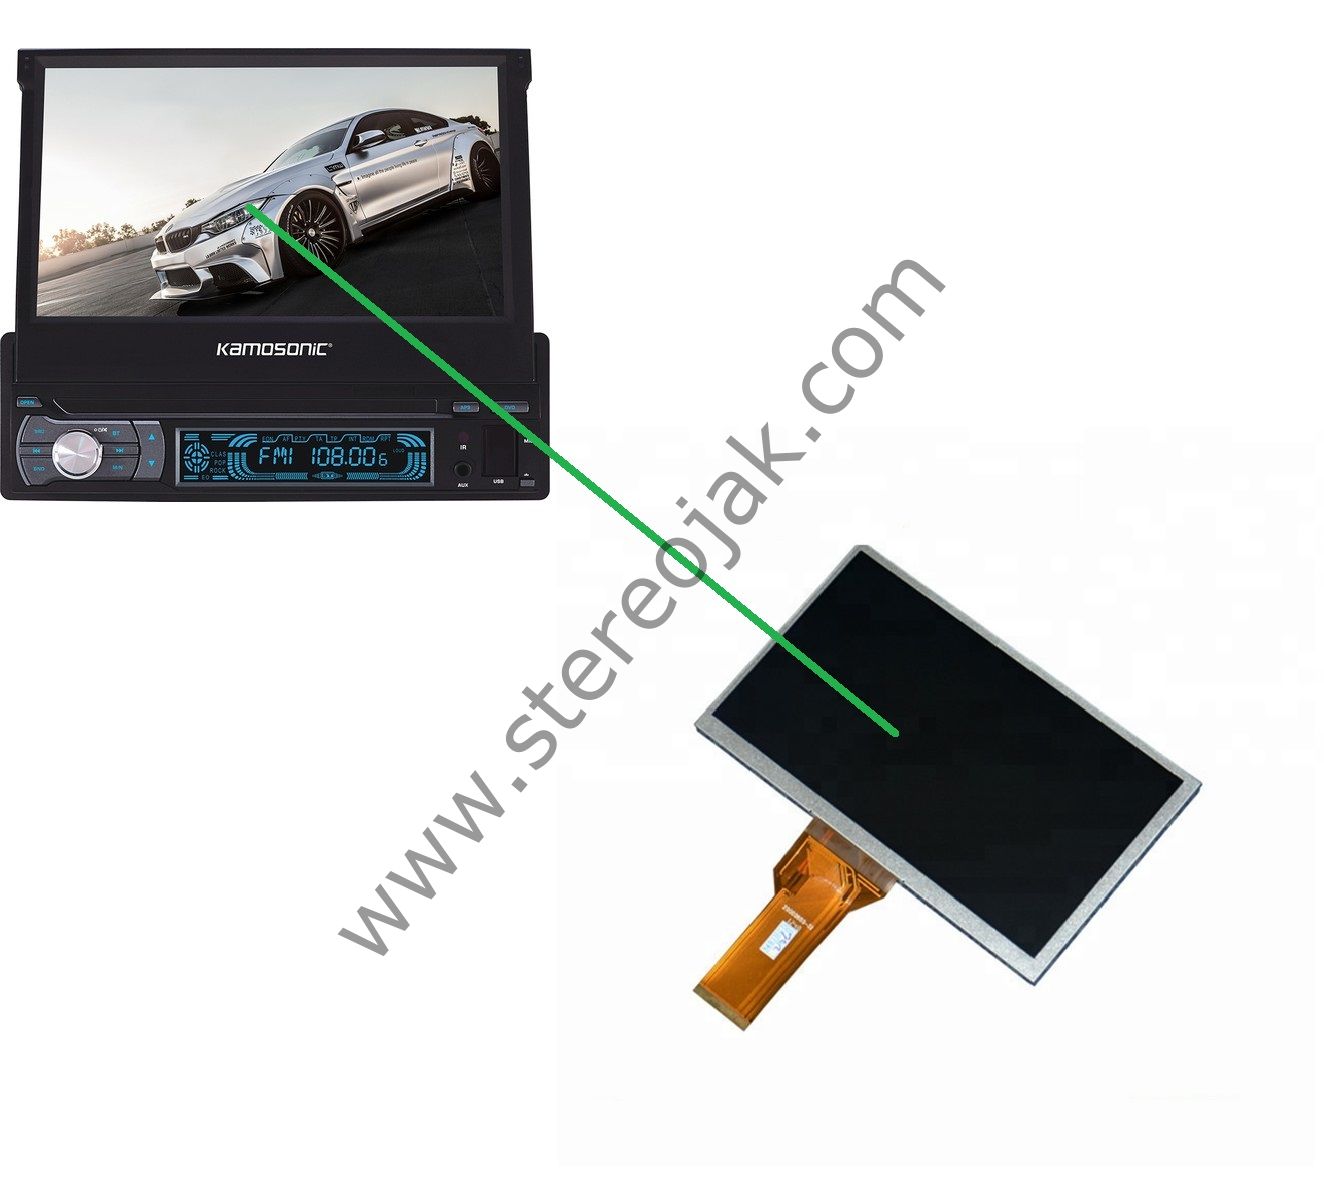 Kamosonıc Ks-Bt704 Indash Oto Teyp 7''   İÇ KISIM   LCD EKRANI    (  WD070AEA150A0   )